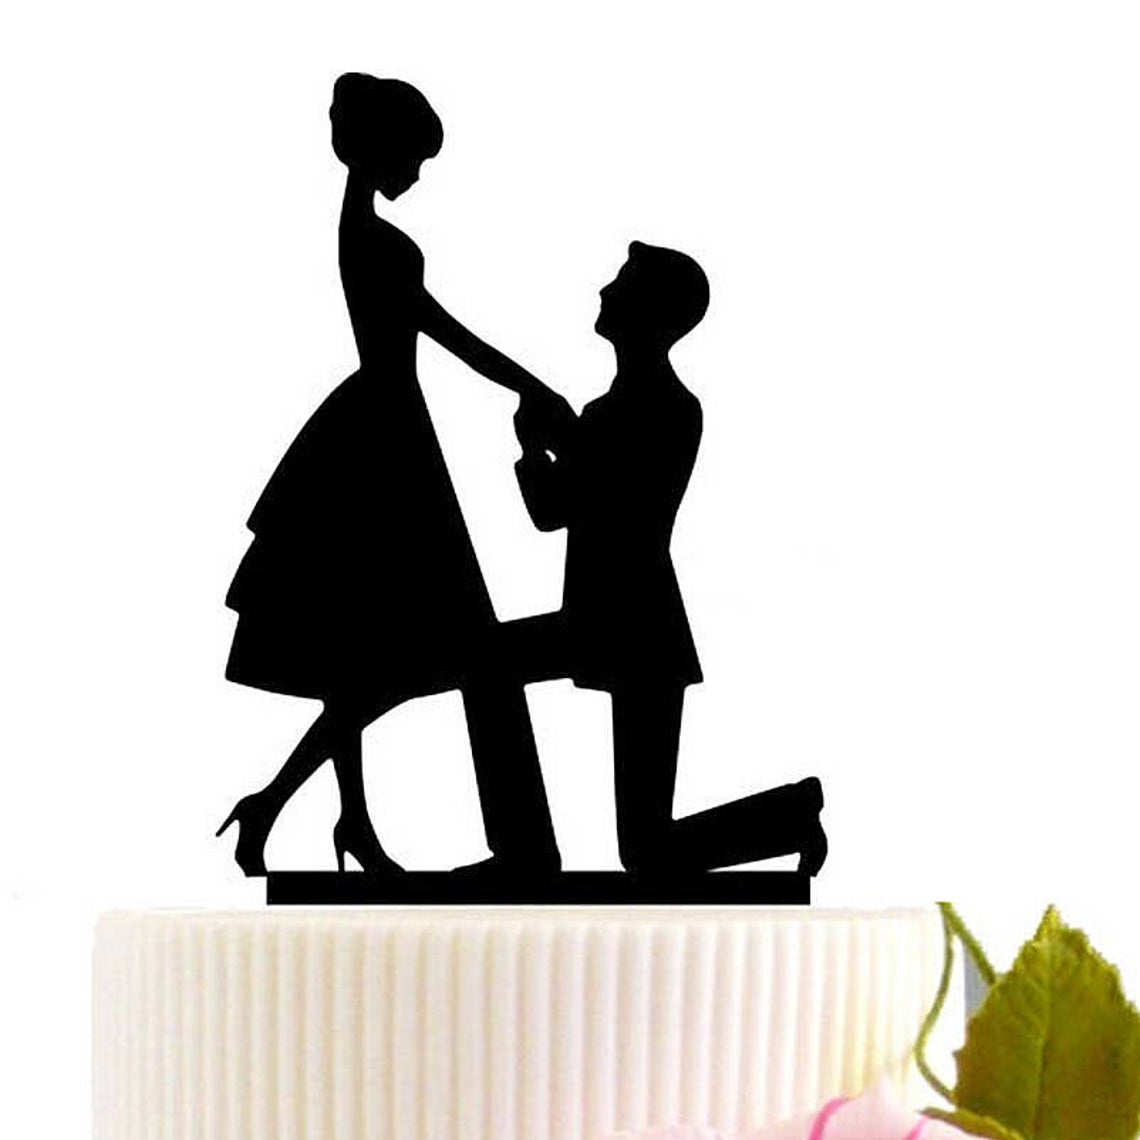 Лазерная резка на коленях, чтобы предложить топпер для свадебного торта